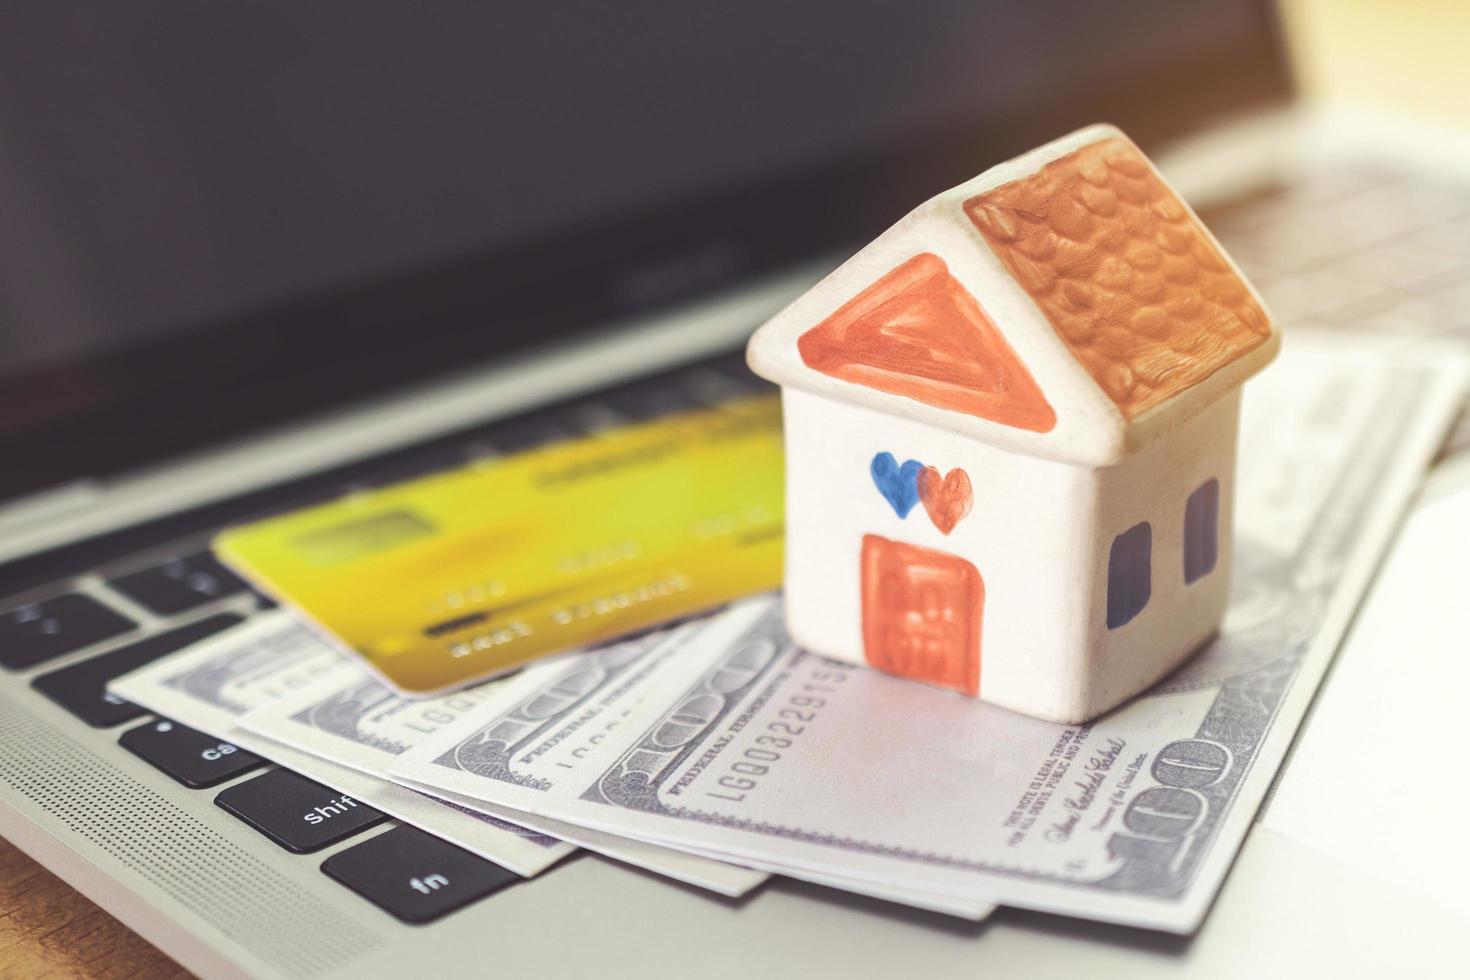 carte de crédit, modèle de maison et cahier sur un bureau en bois. achats en ligne et paiement de la maison à l'aide d'un ordinateur portable photo